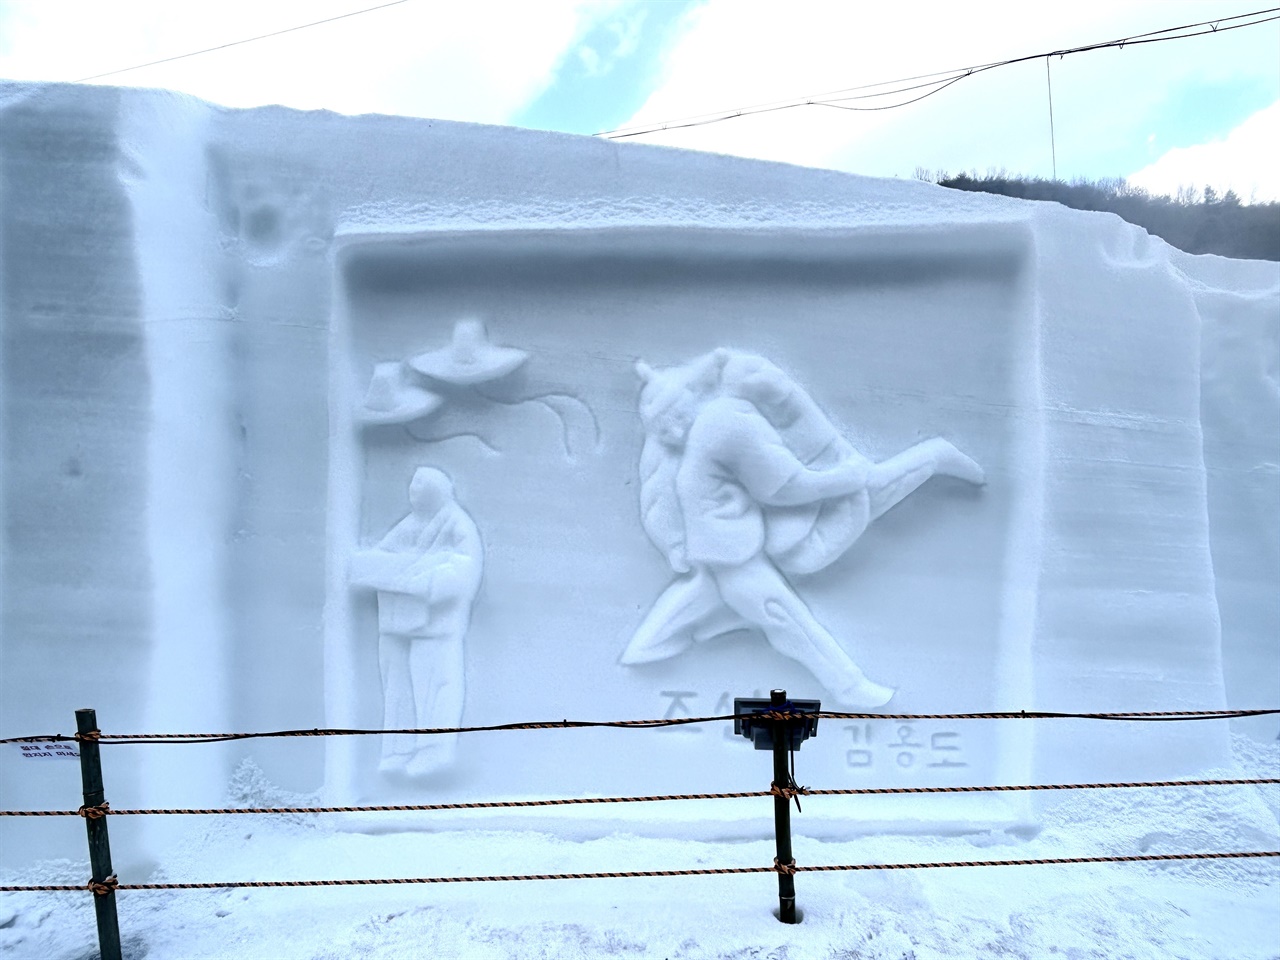 청양 알프스마을 얼음분수축제장에는 다양한 얼음조각이 있다. 풍속화로 유명한 단원 김홍도의 작품도 조각되어 관광객들의 눈길을 끌었다. 